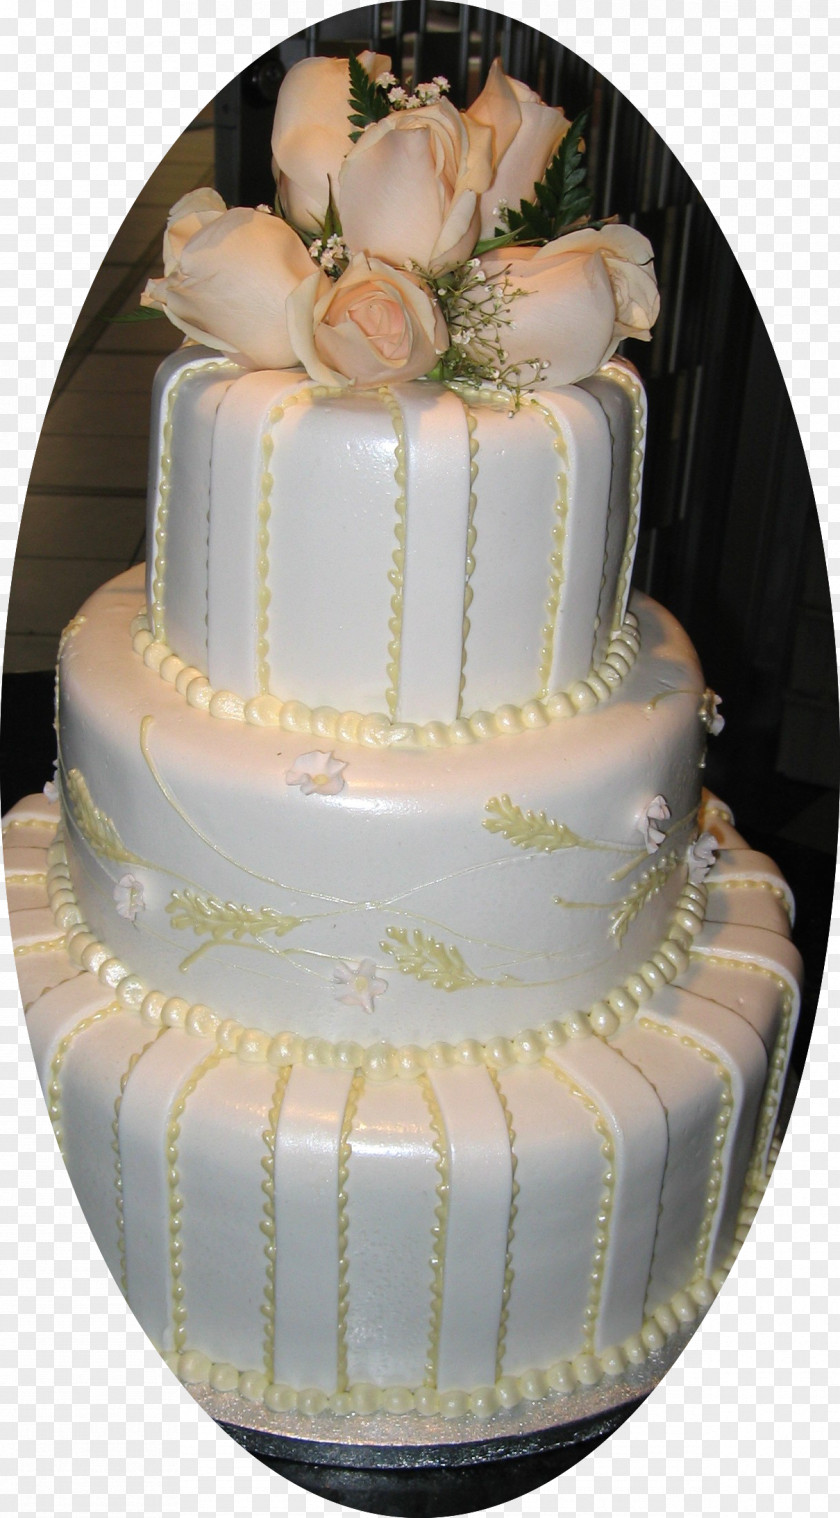 Macaron Cake Wedding Torte Decorating Royal Icing Buttercream PNG